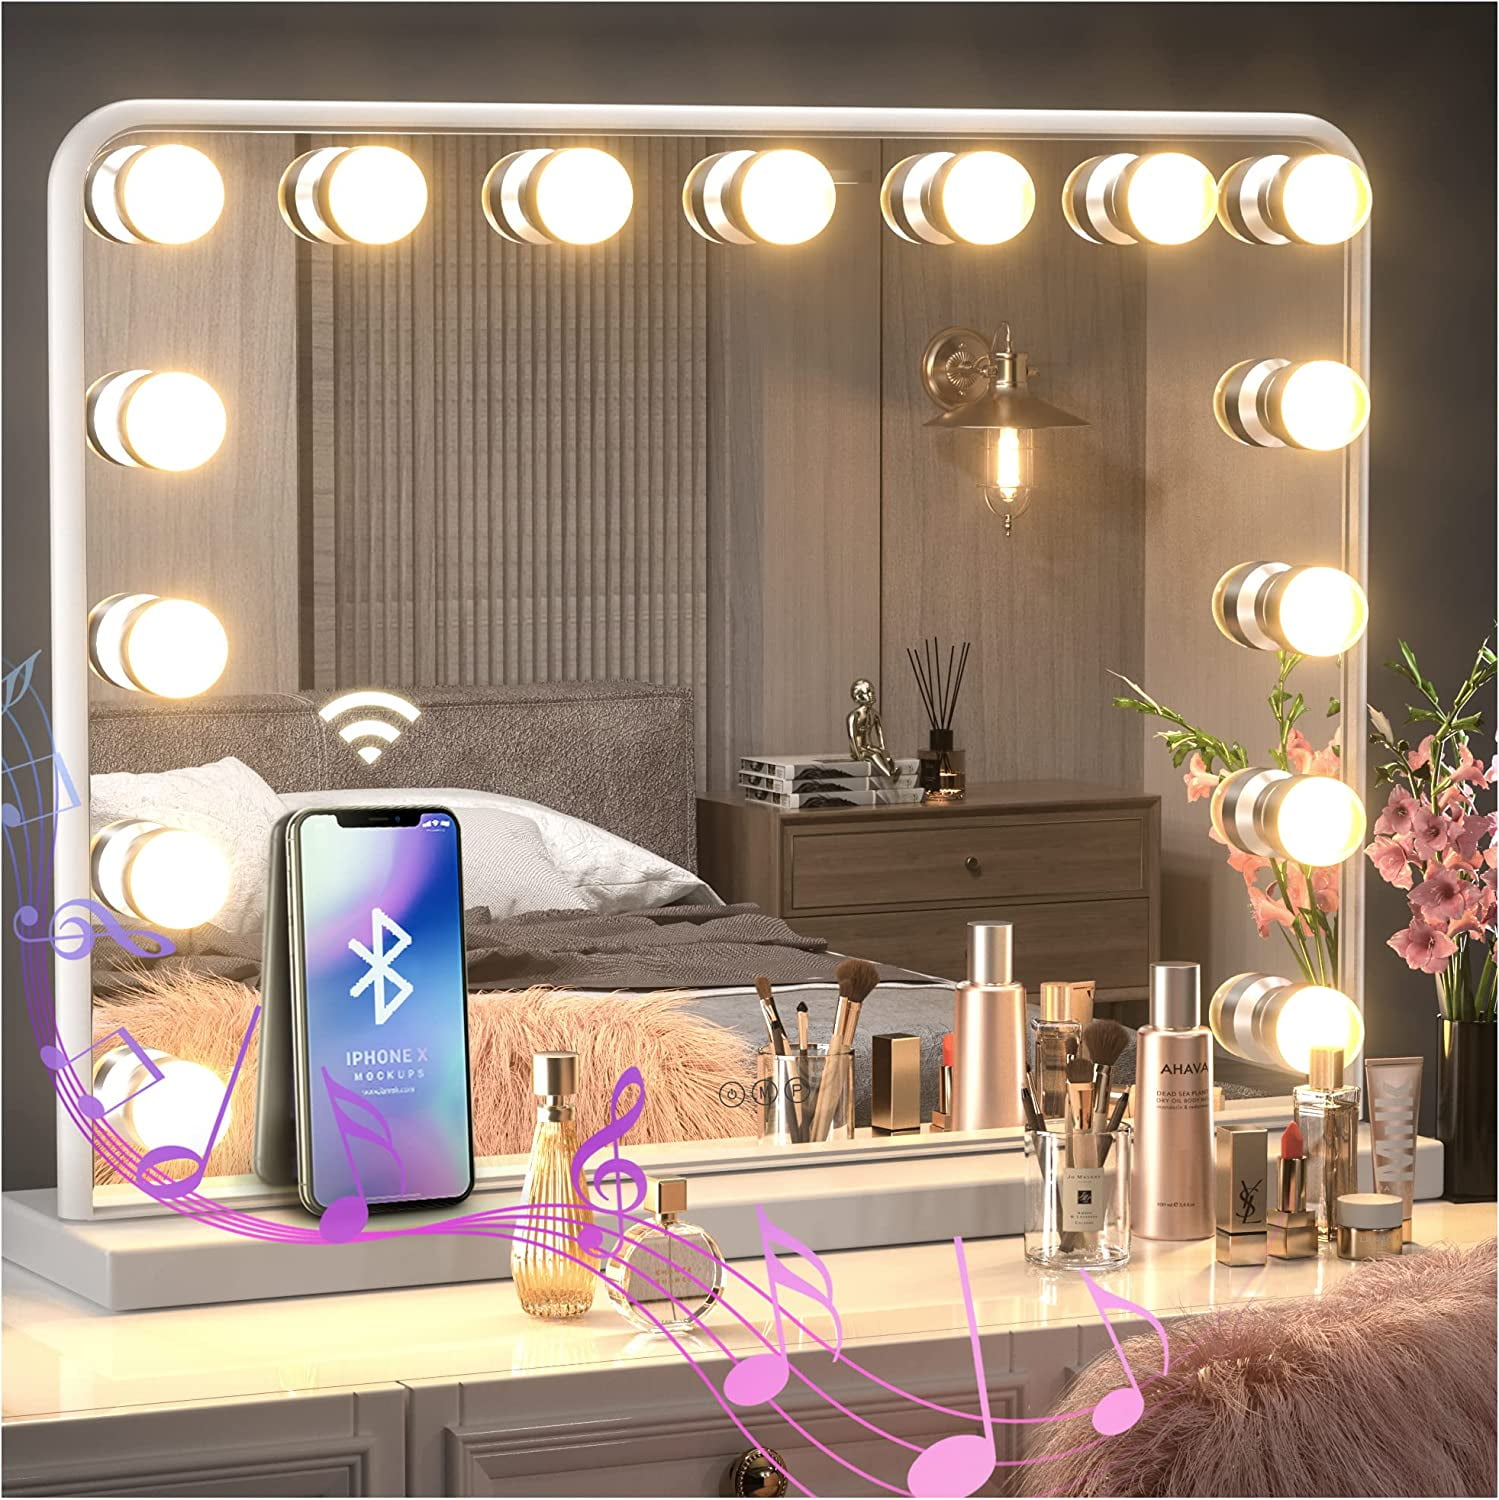 Keonjinn Large Vanity Mirror with Lights Bluetooth Speaker